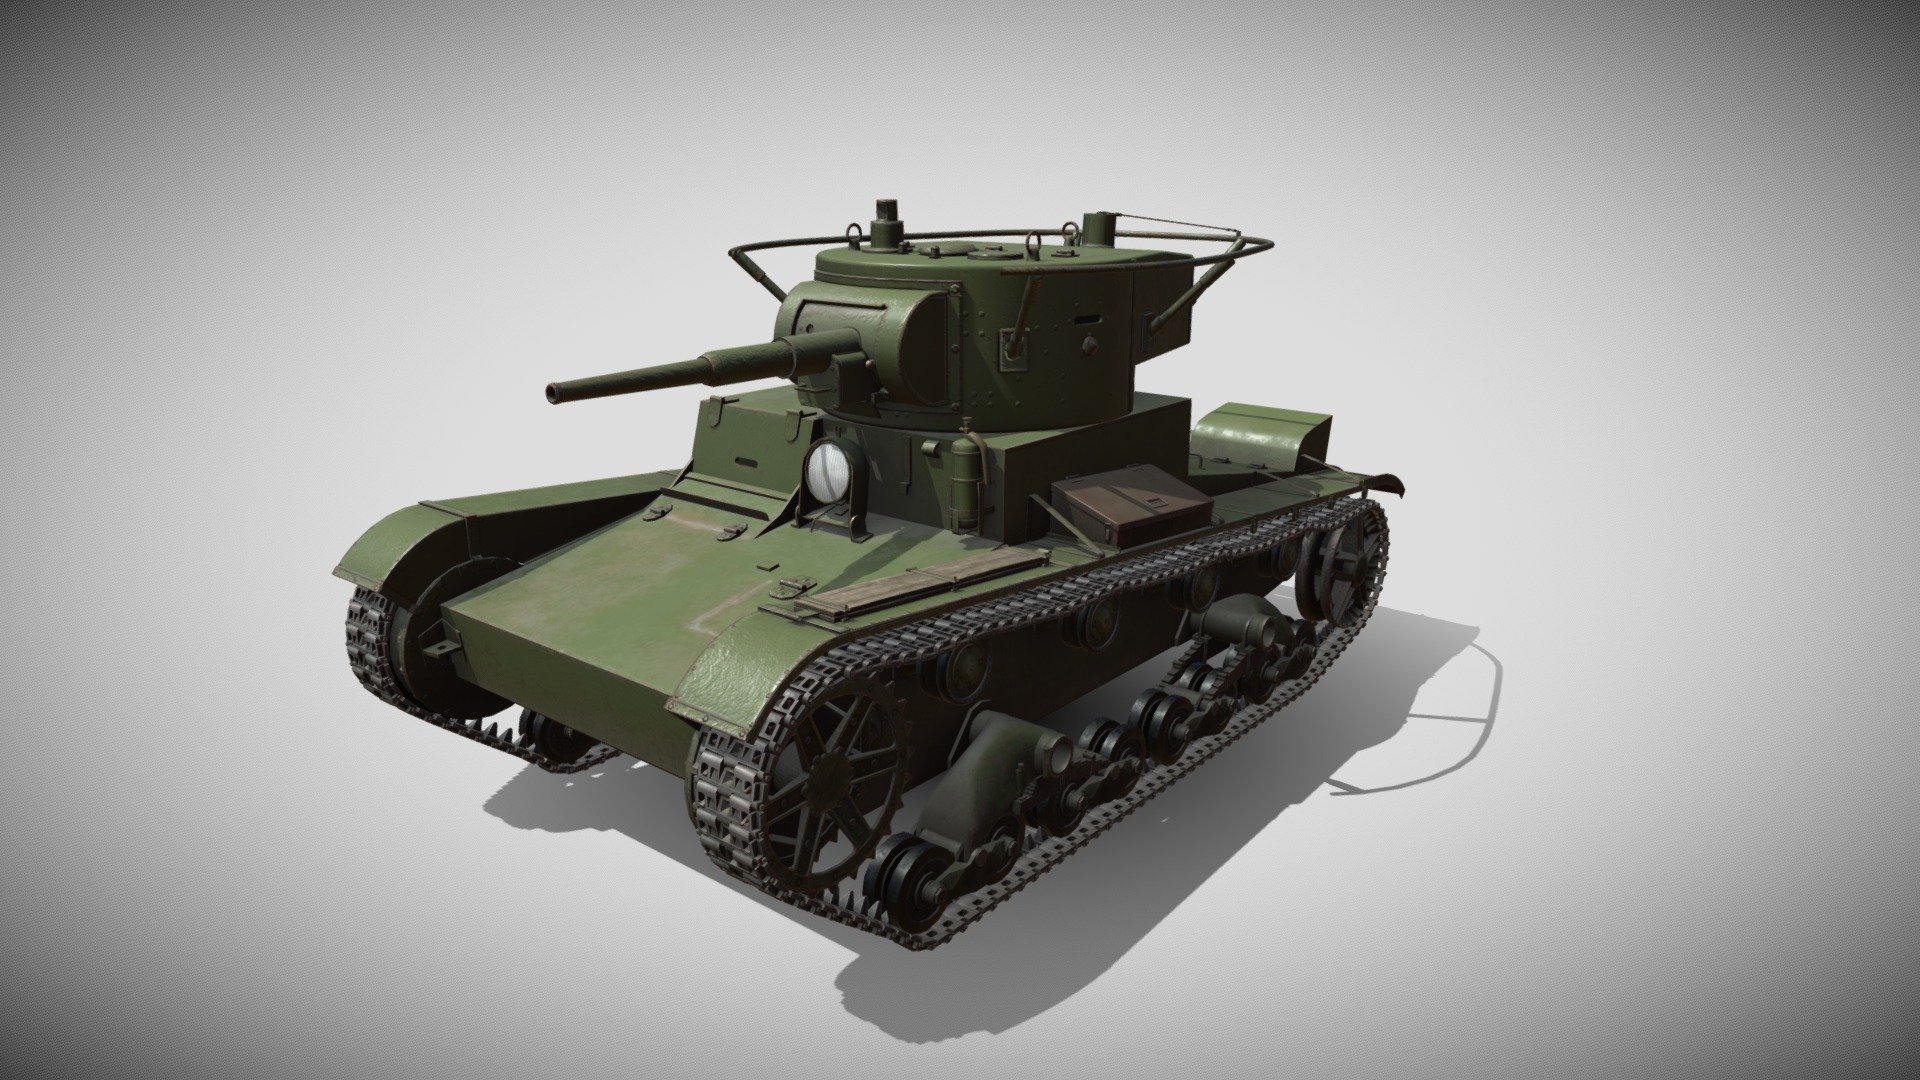 Modeled in Modo, packed in RizomUV, textured in Substance 3D Painter - T-26 light tank - 3D model by EugeneTheModeler (@EugeneTheSage) 3d model